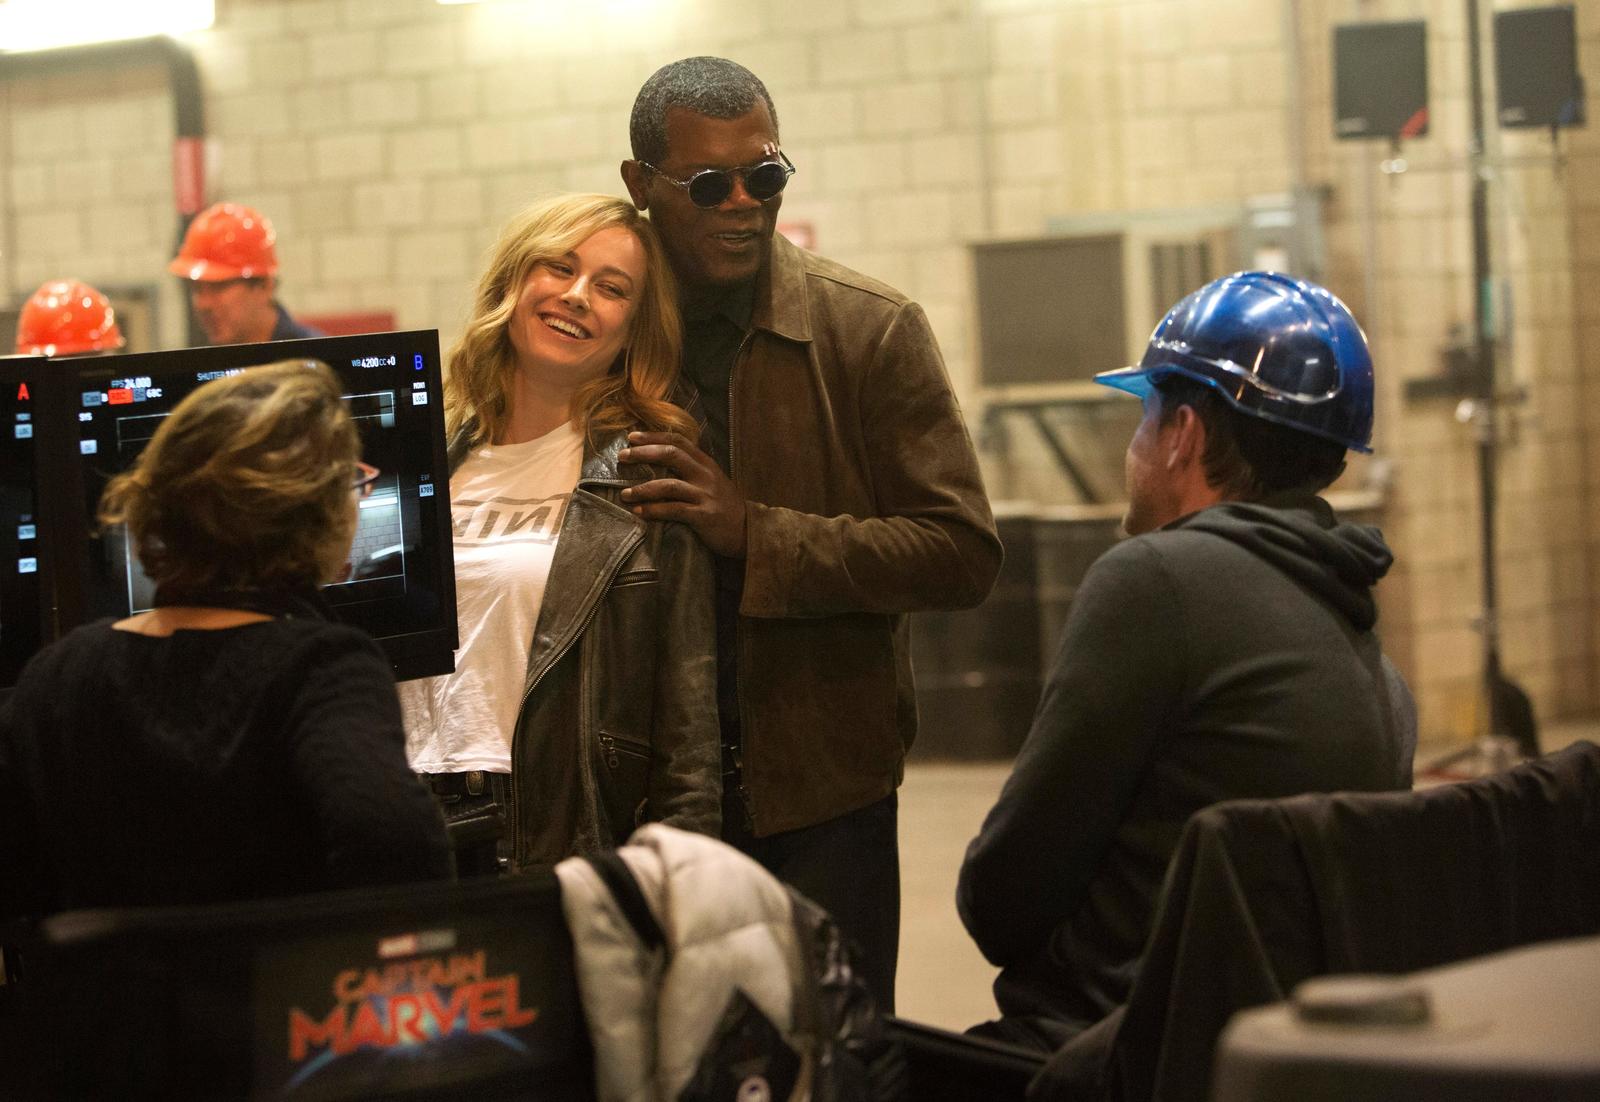 Convivencia. Brie Larson y Samuel L. Jackson durante el rodaje del filme , Captain Marvel. (ARCHIVO)